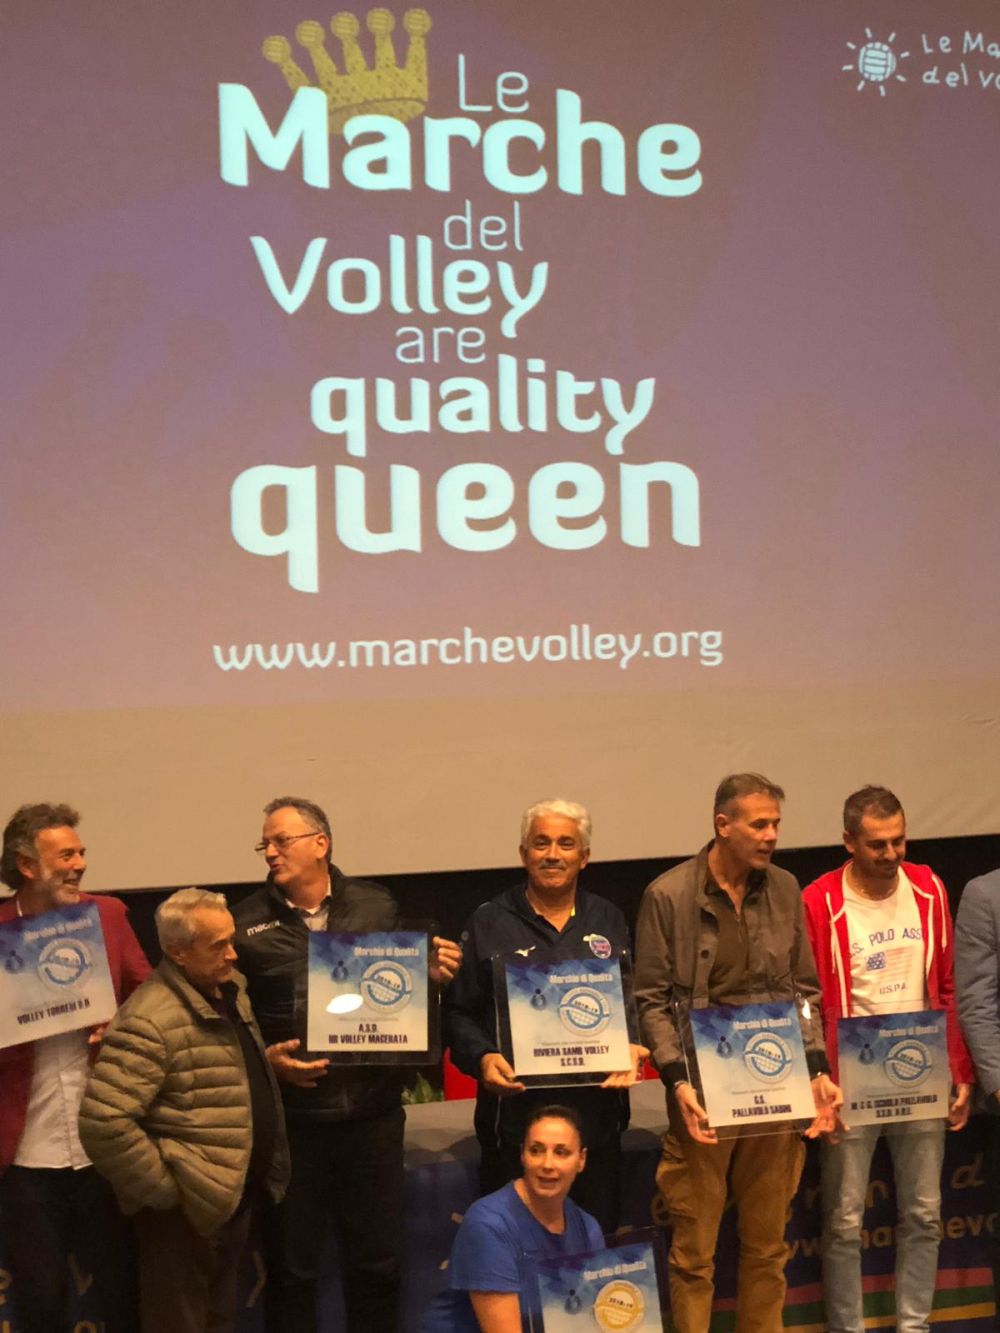 Riviera Samb Volley medaglia d’argento per la qualità del settore giovanile